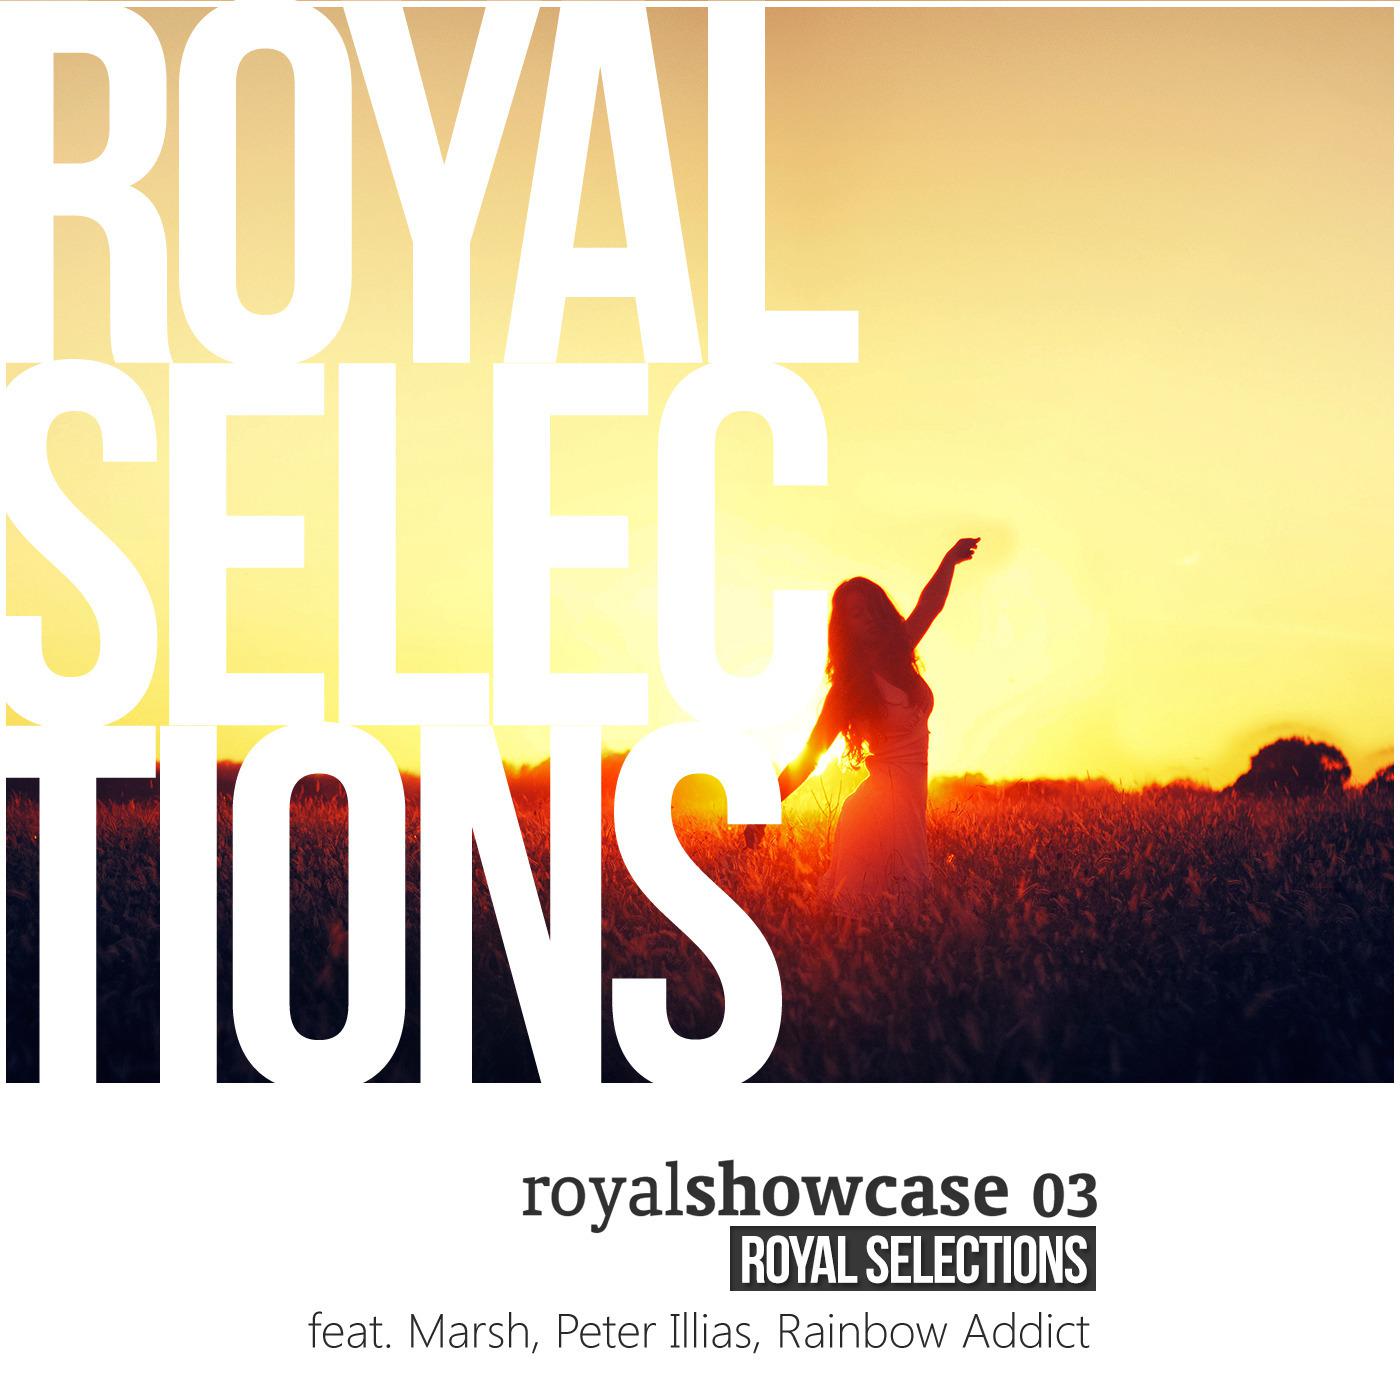 Silk Royal Showcase 03 :: Royal Selections